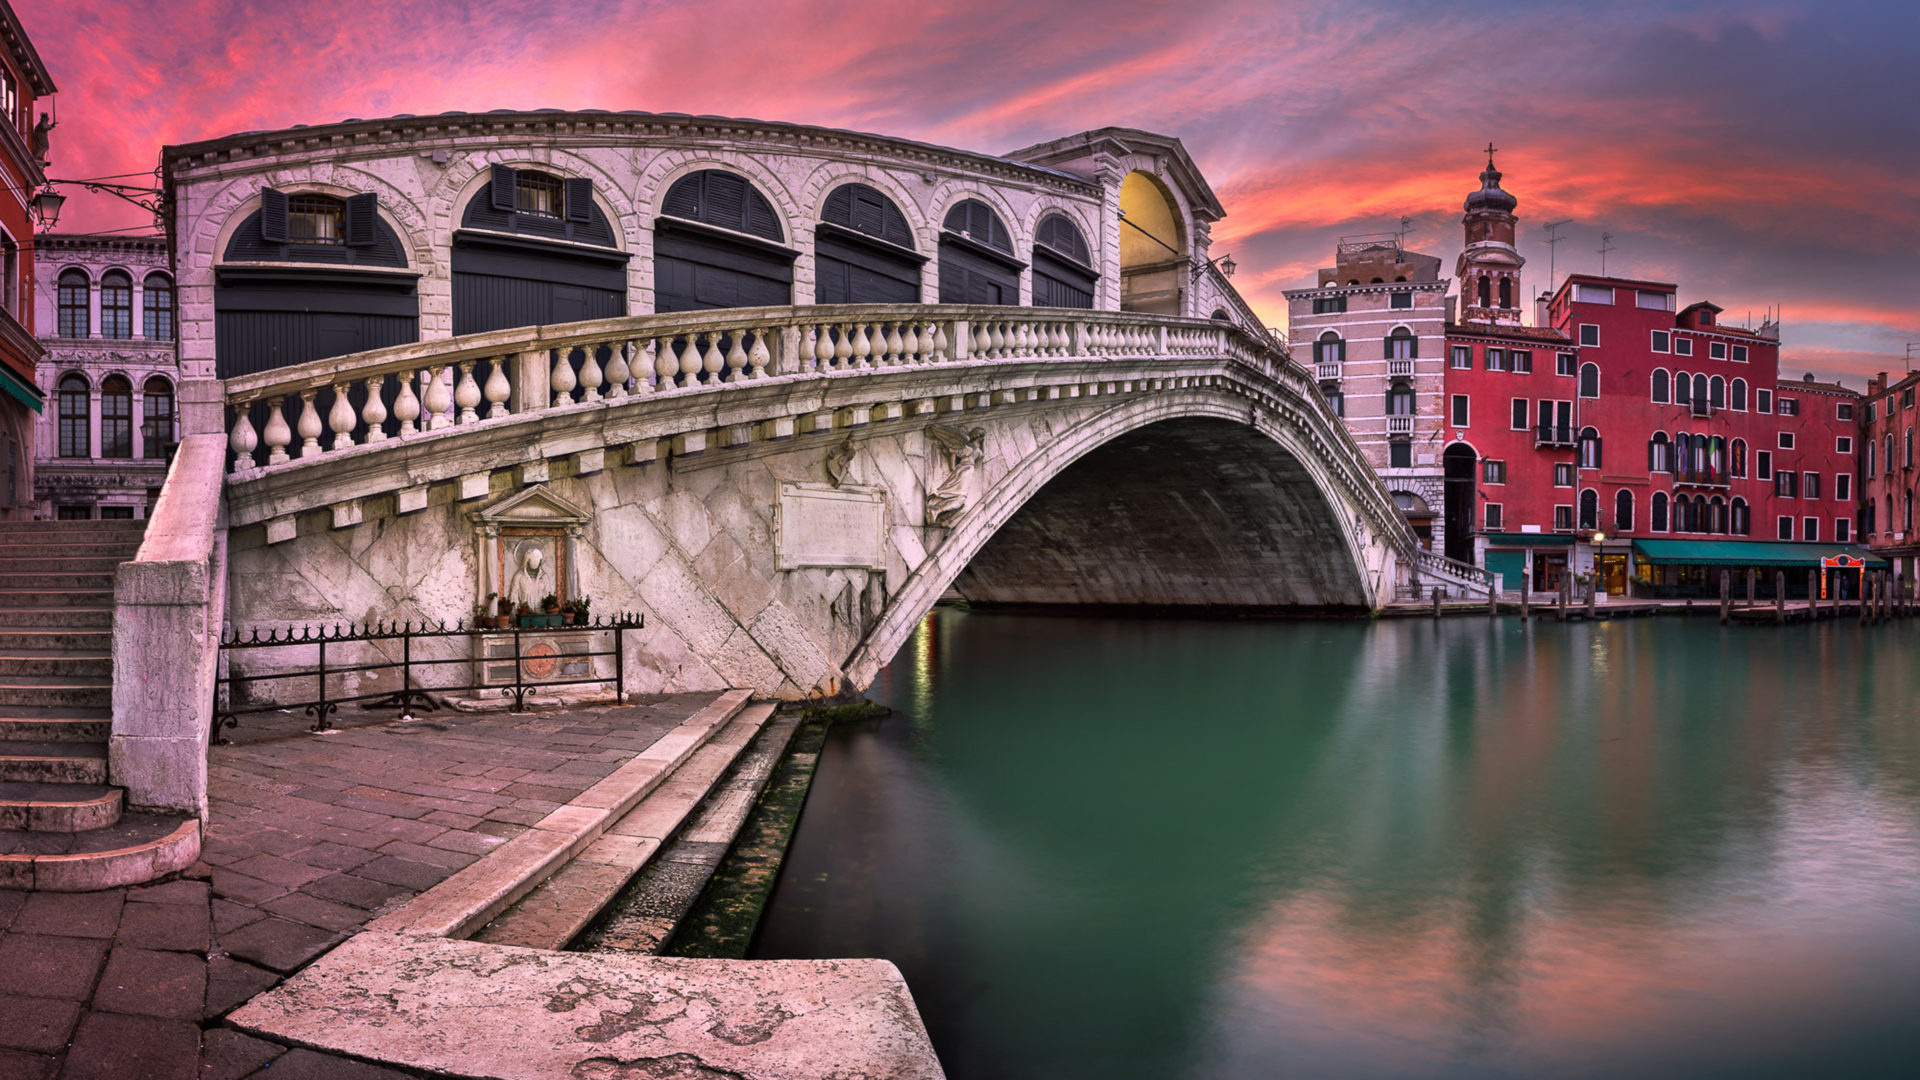 Sunrise Venice Italy, Rialto Bridge, San Bartolomeo church, 4K Ultra HD wallpaper, 1920x1080 Full HD Desktop